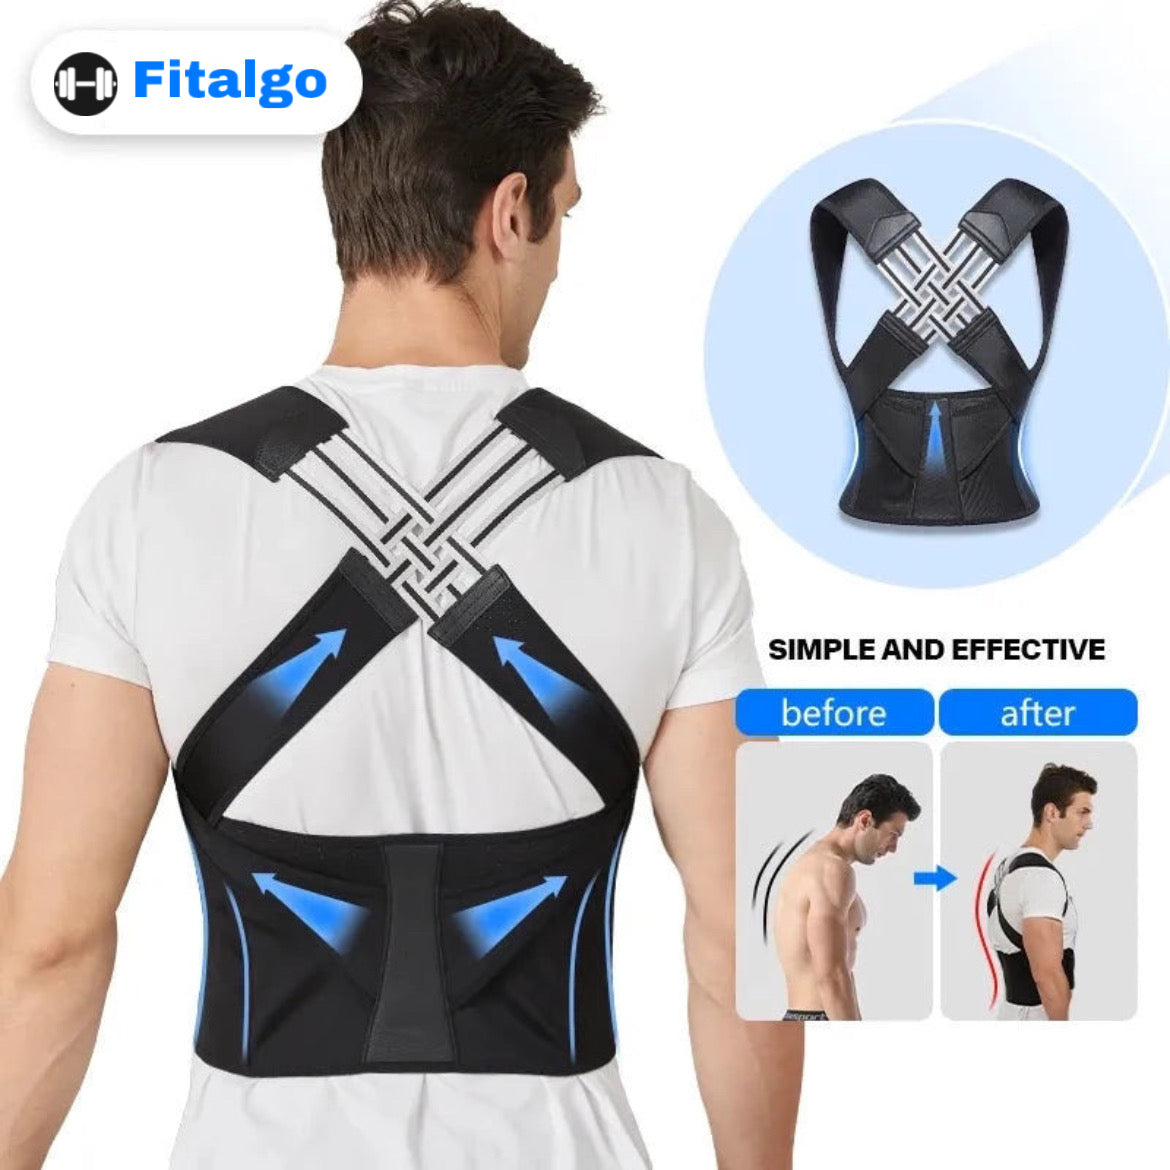 Fitalgo Posture Corrector 3.0